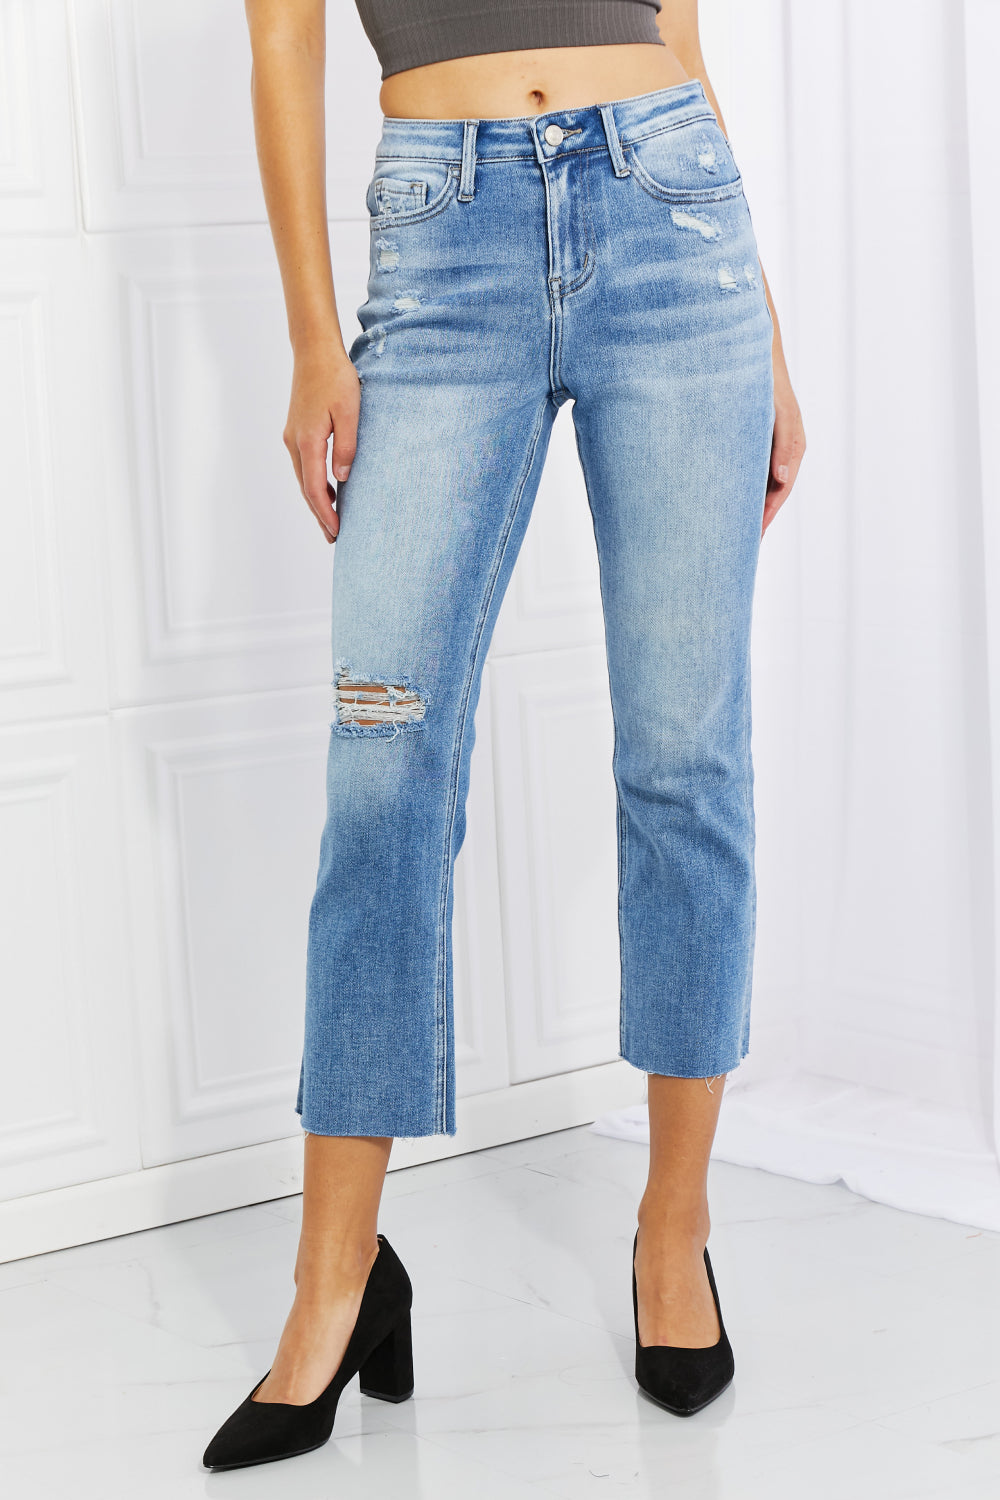 LOVERVET by Vervet High Rise Slim Straight Jeans